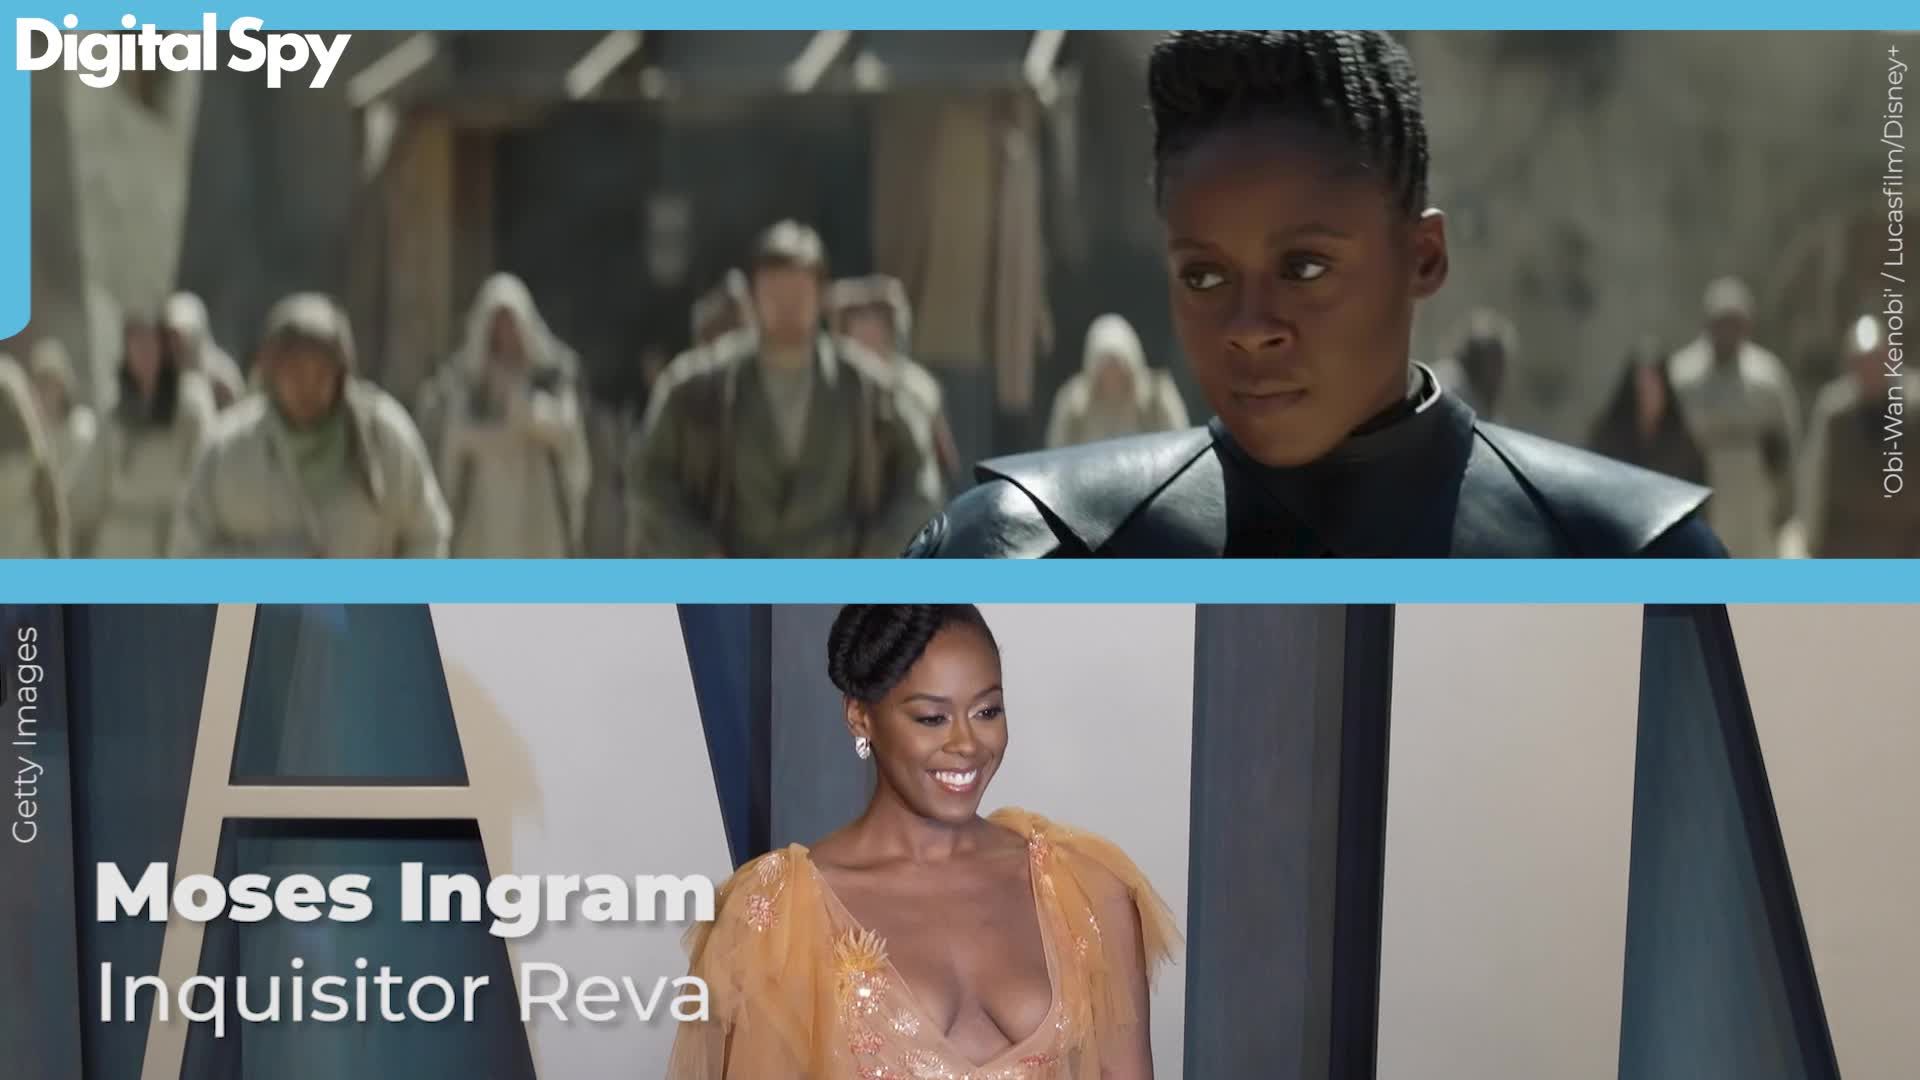 Obi-Wan Kenobi' Star Moses Ingram Heading to Apple TV Black Panther Series